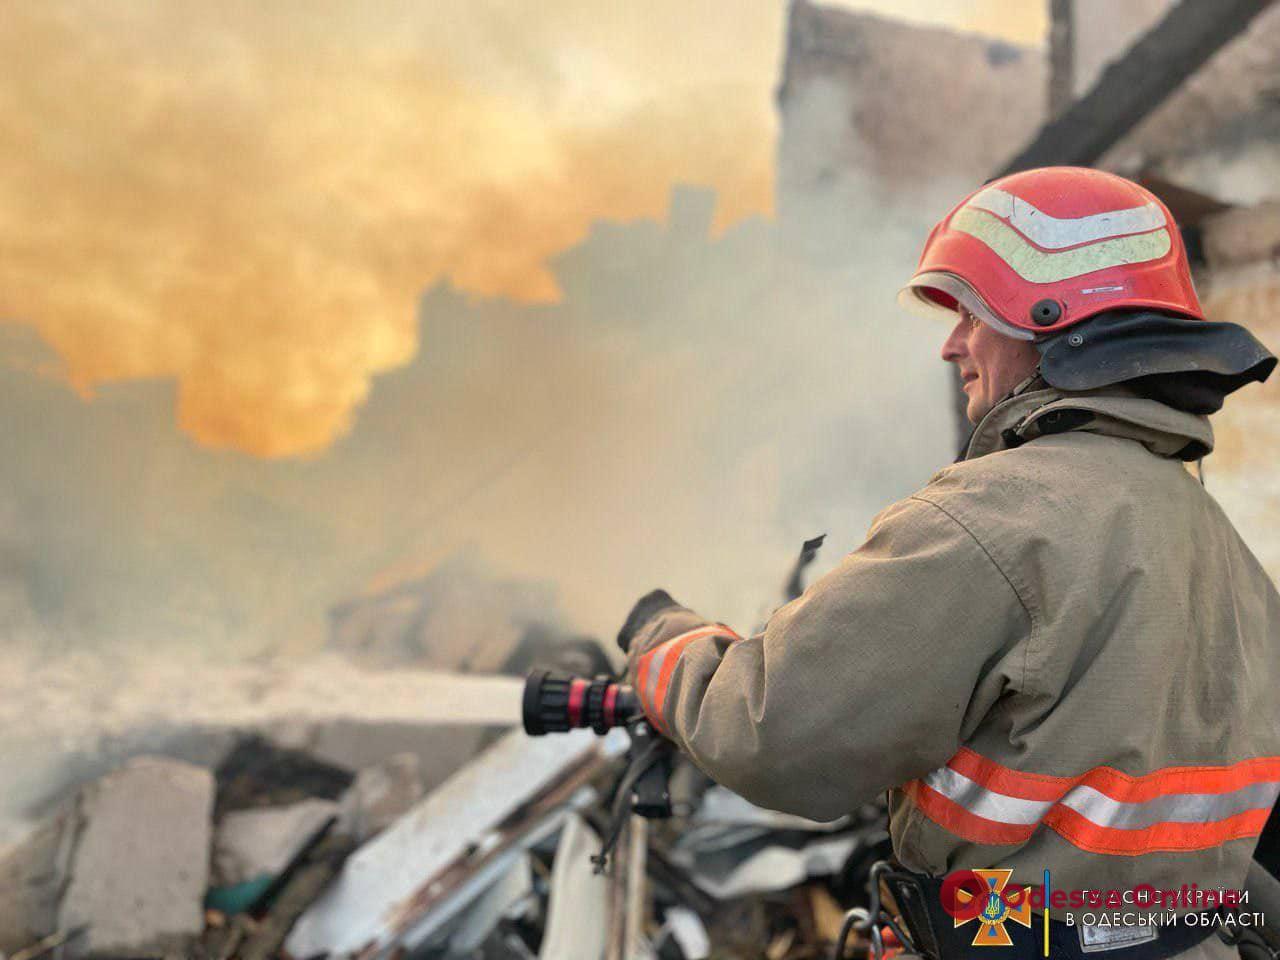 Ліквідація пожежі внаслідок ракетного удару по Одещині (фото, відео)